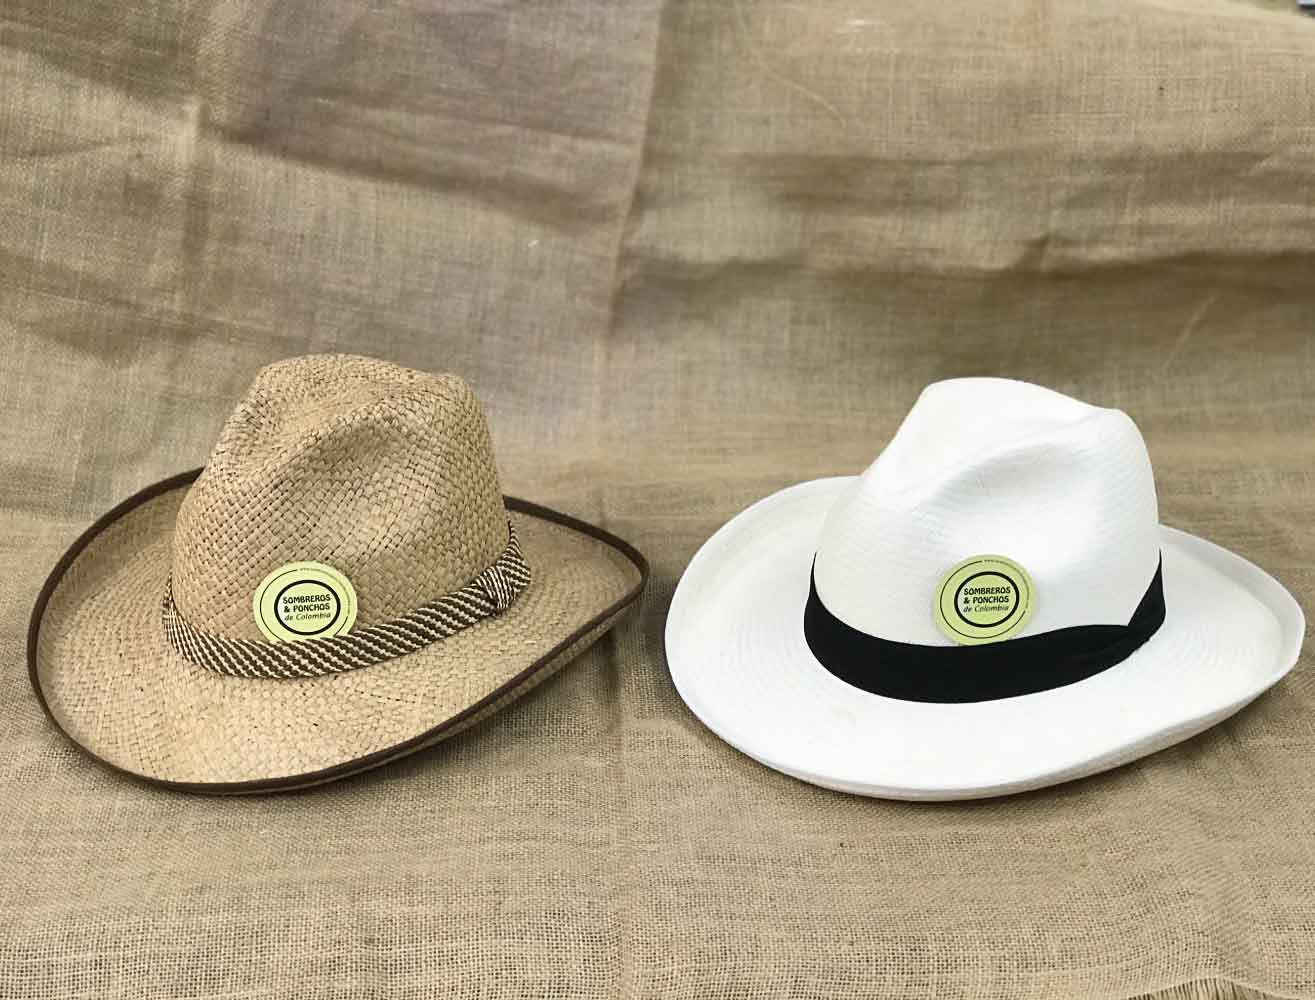 Aparte pavo Apariencia Cacique-horma-borsalino – Sombreros y pochos de Colombia